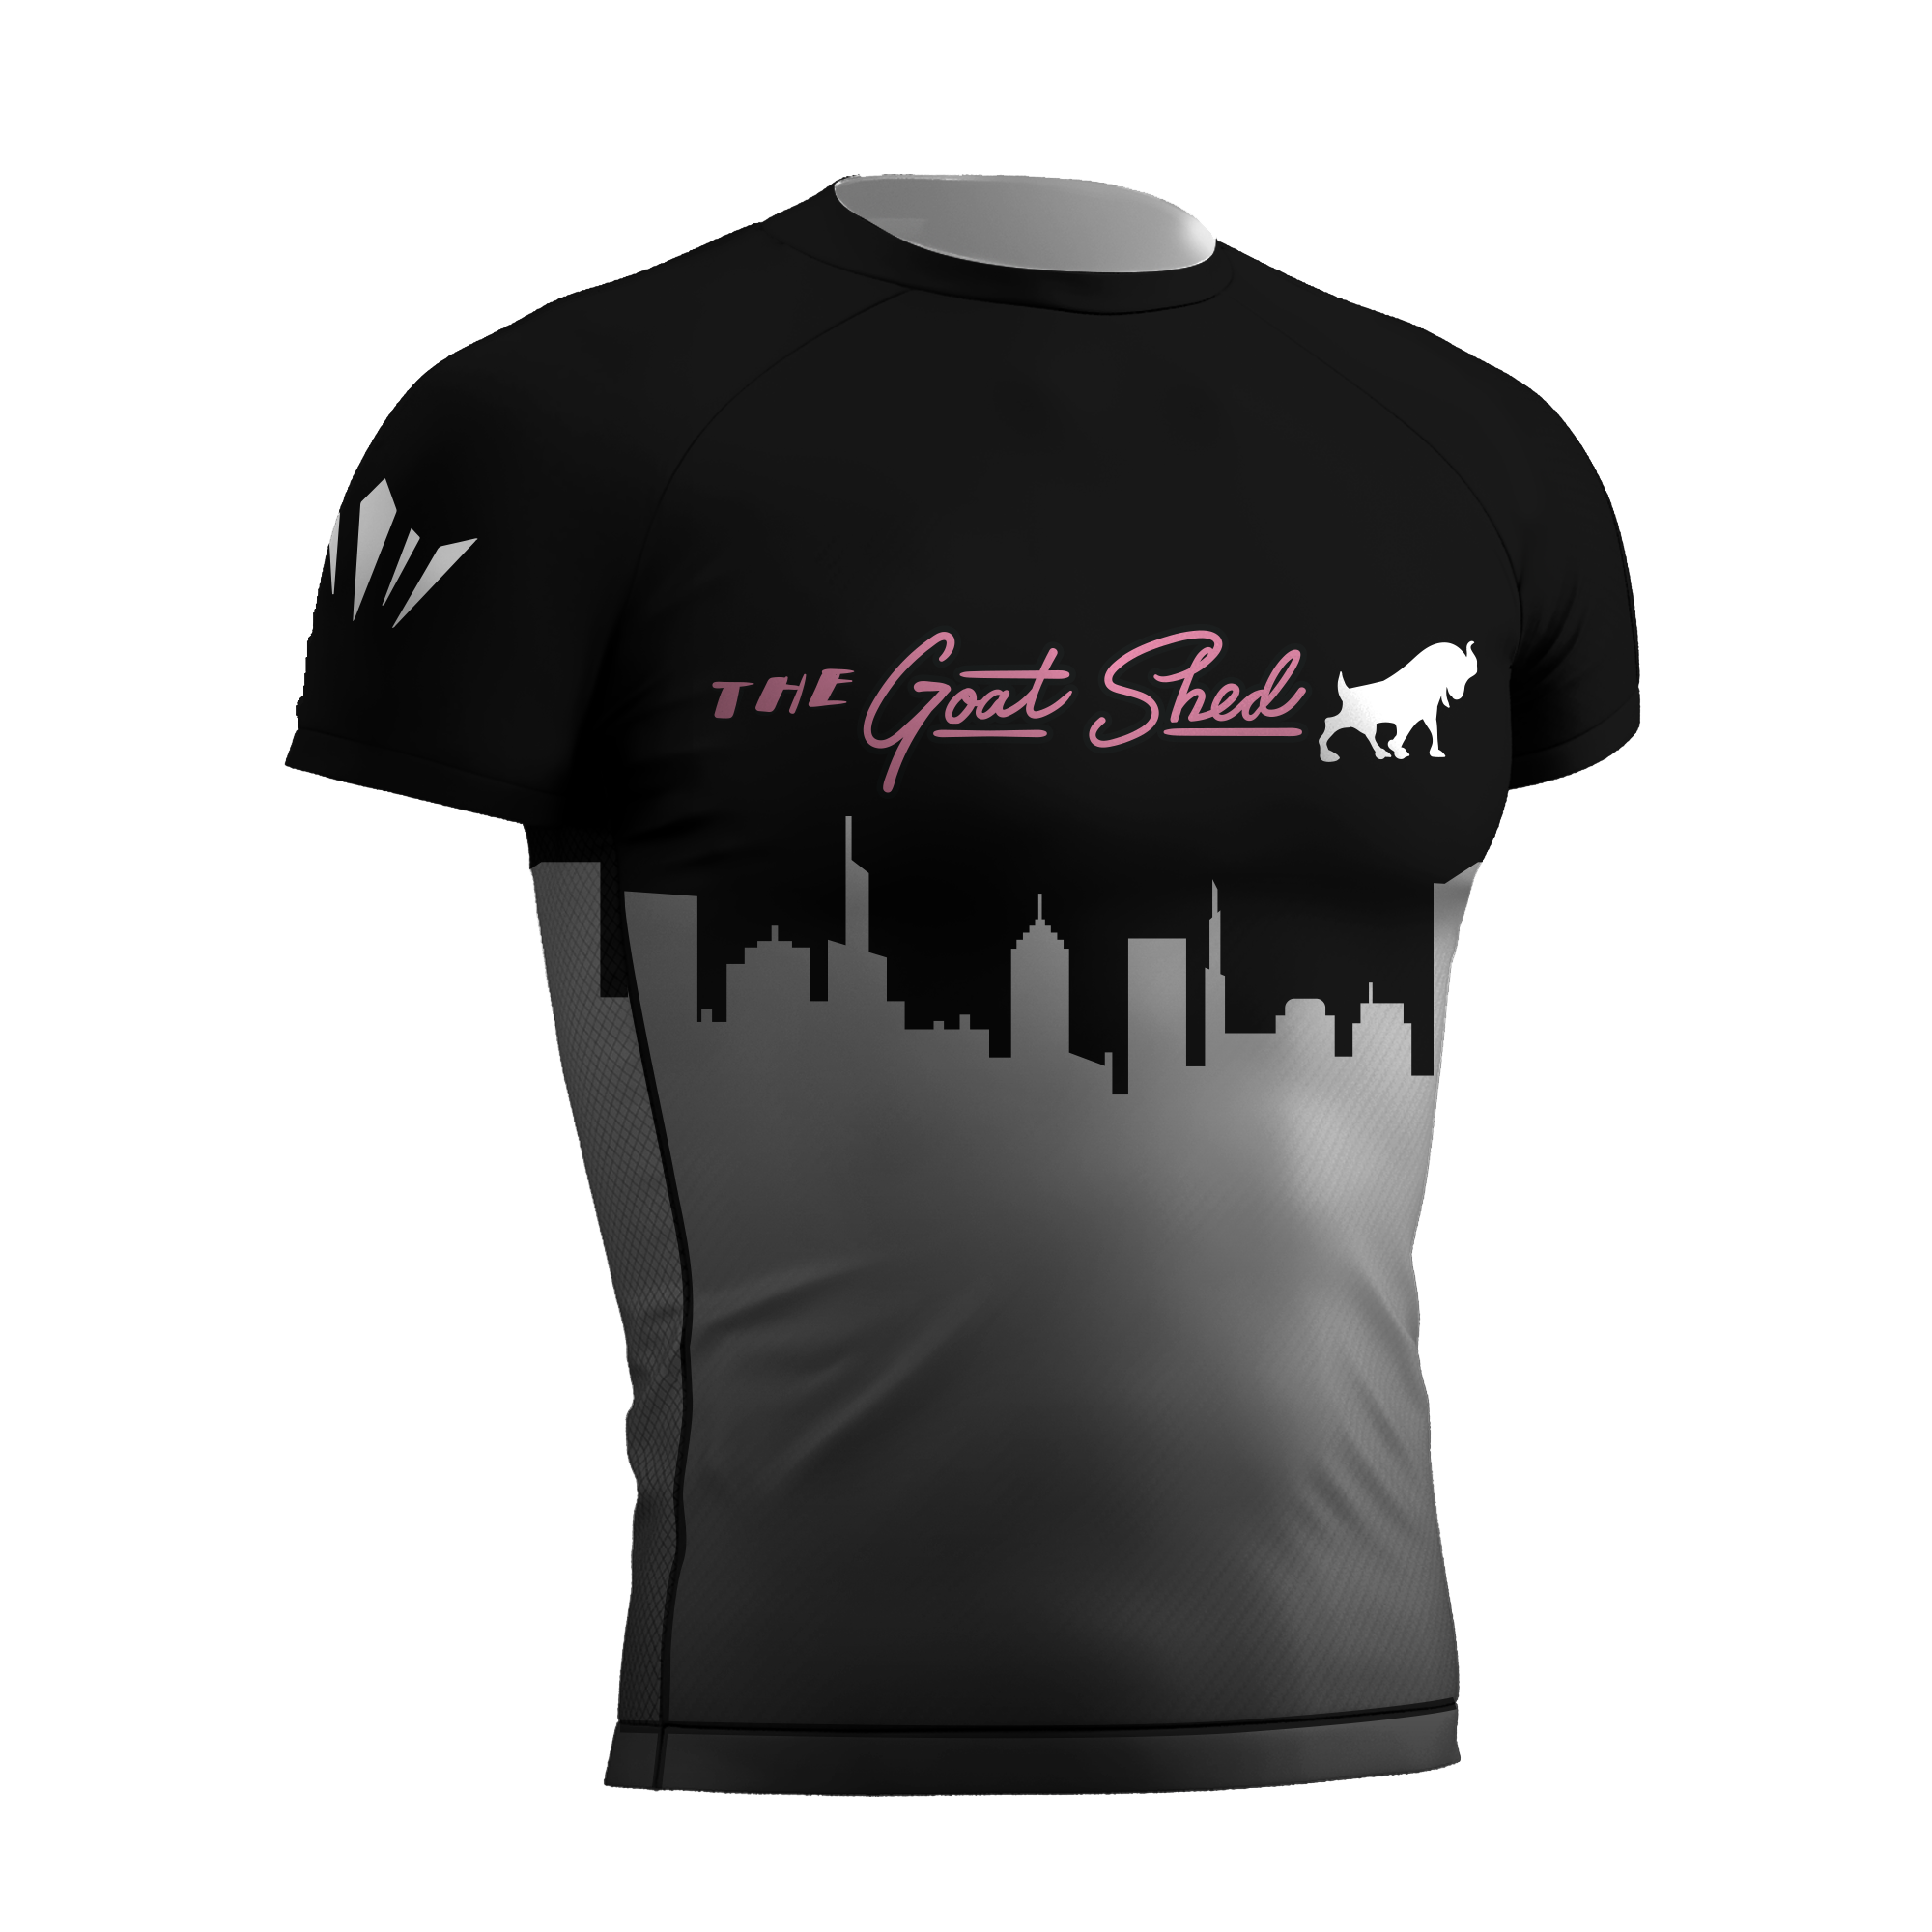 Goat Shed Rashguard - Skyline